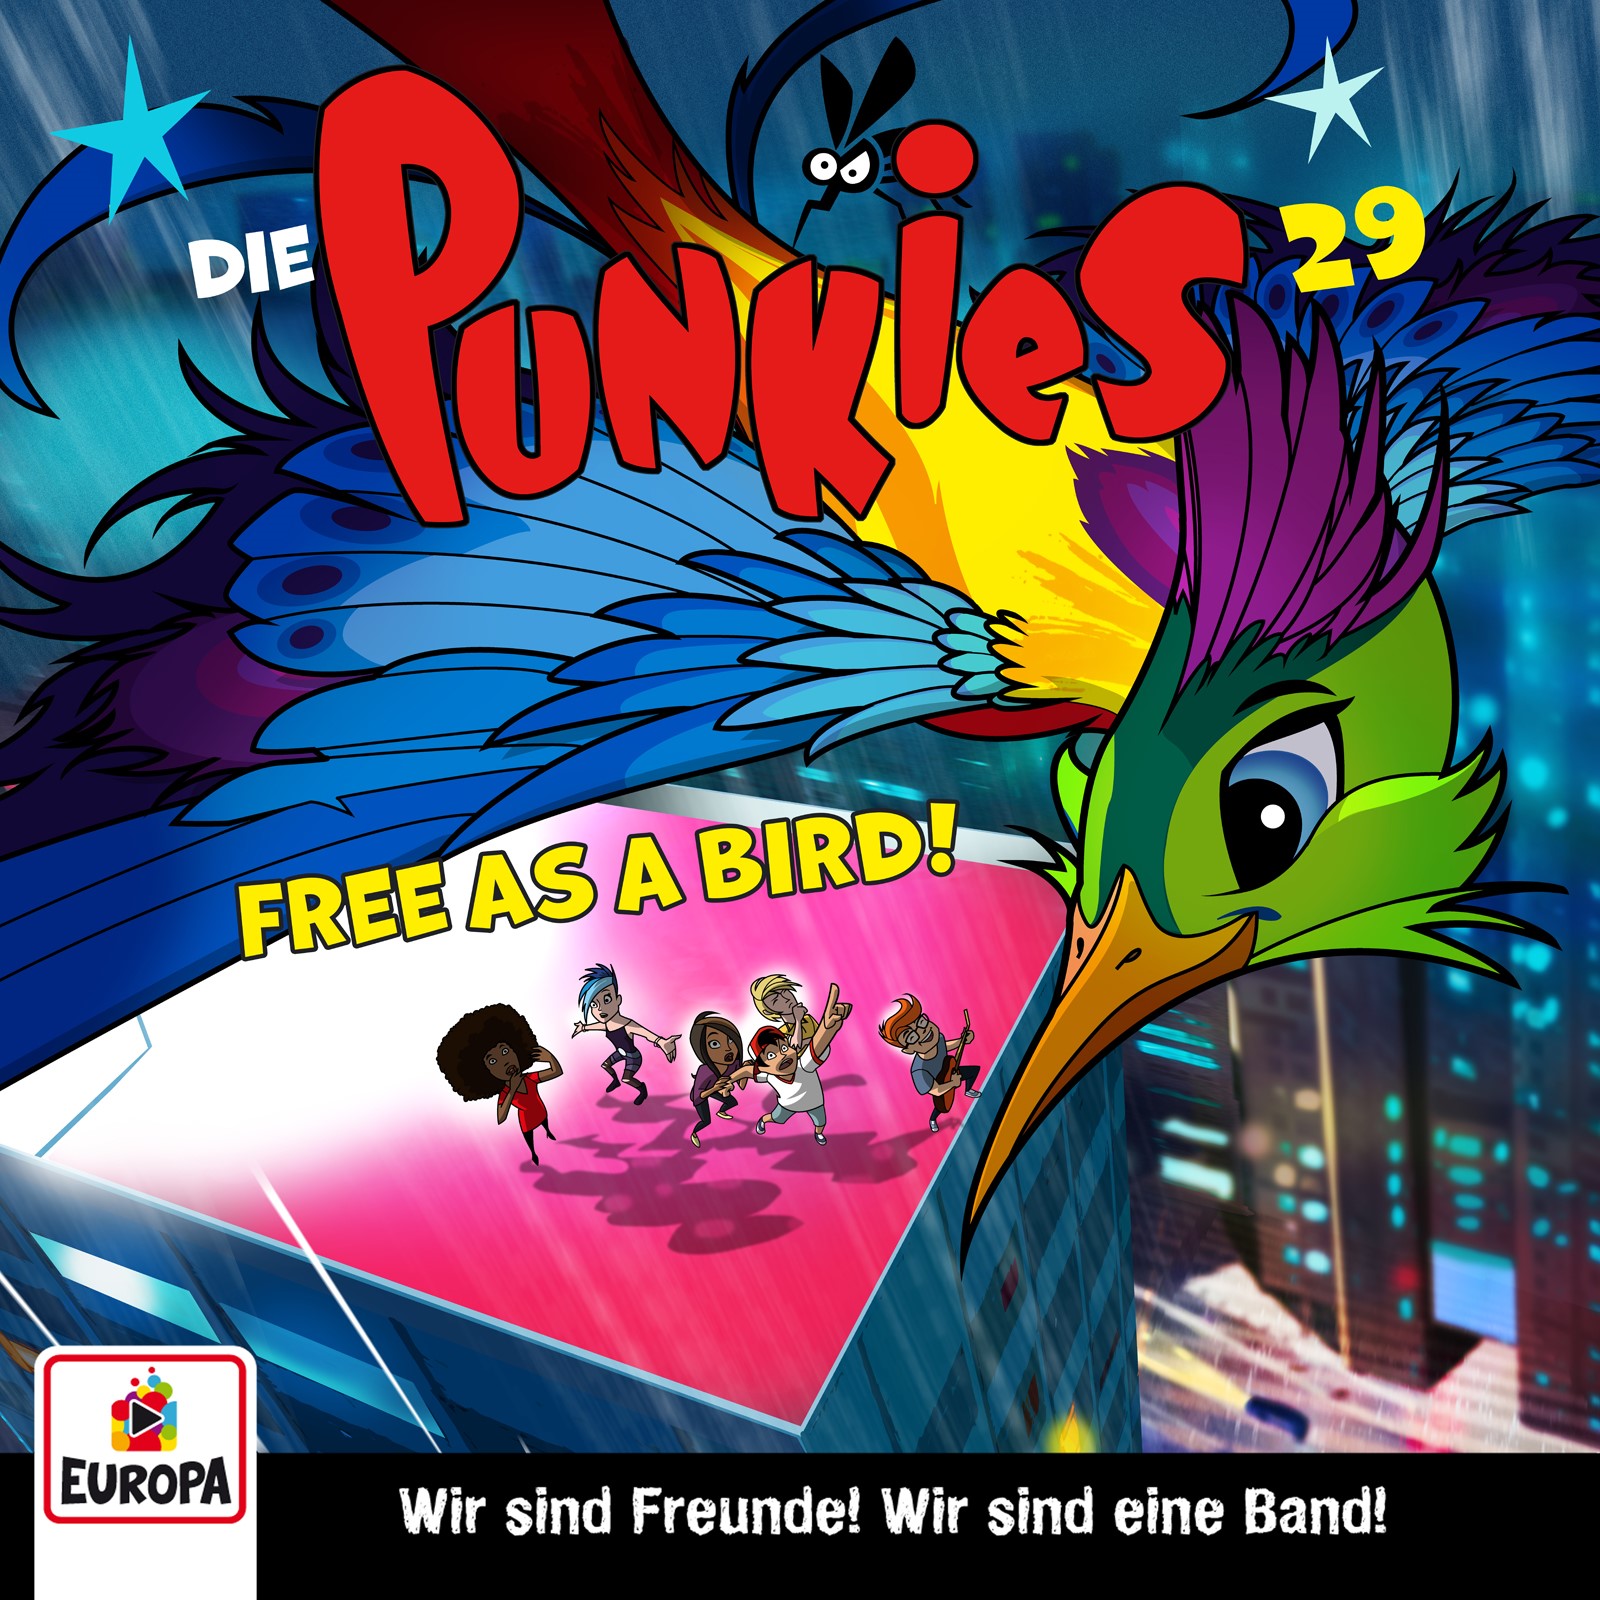 Die Punkies : Free as a Bird